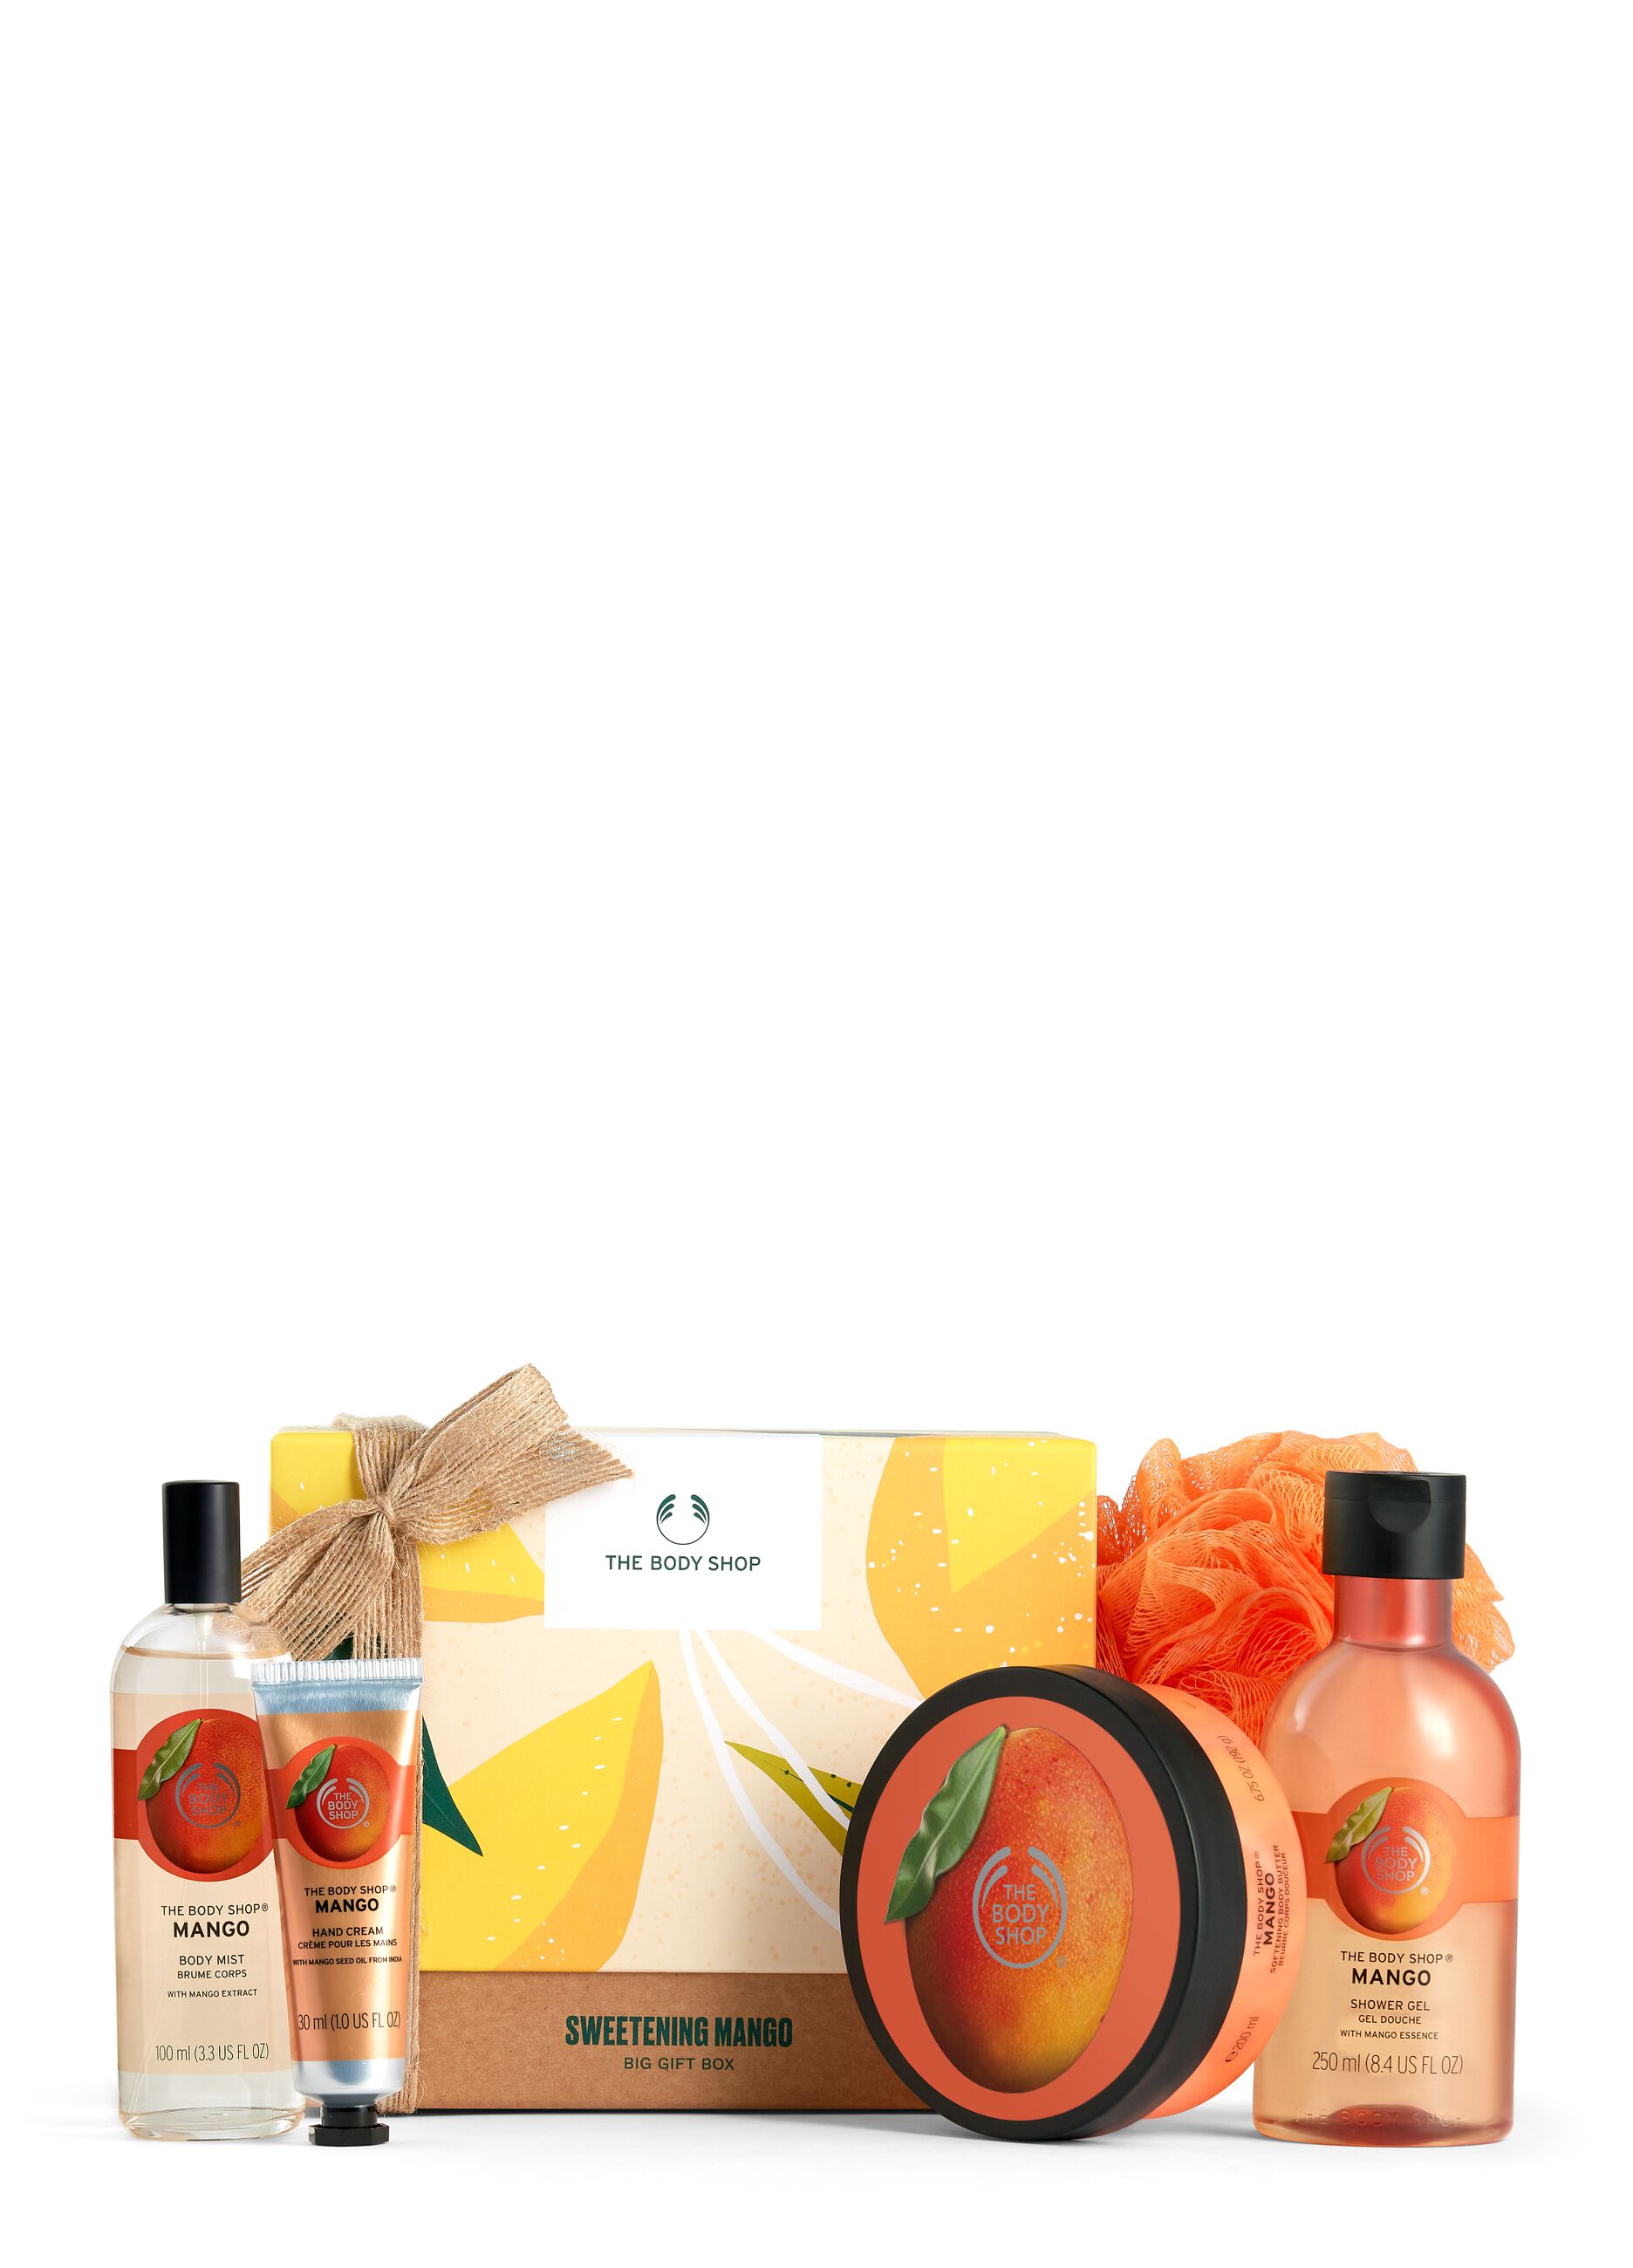 The Body Shop large mango gift box